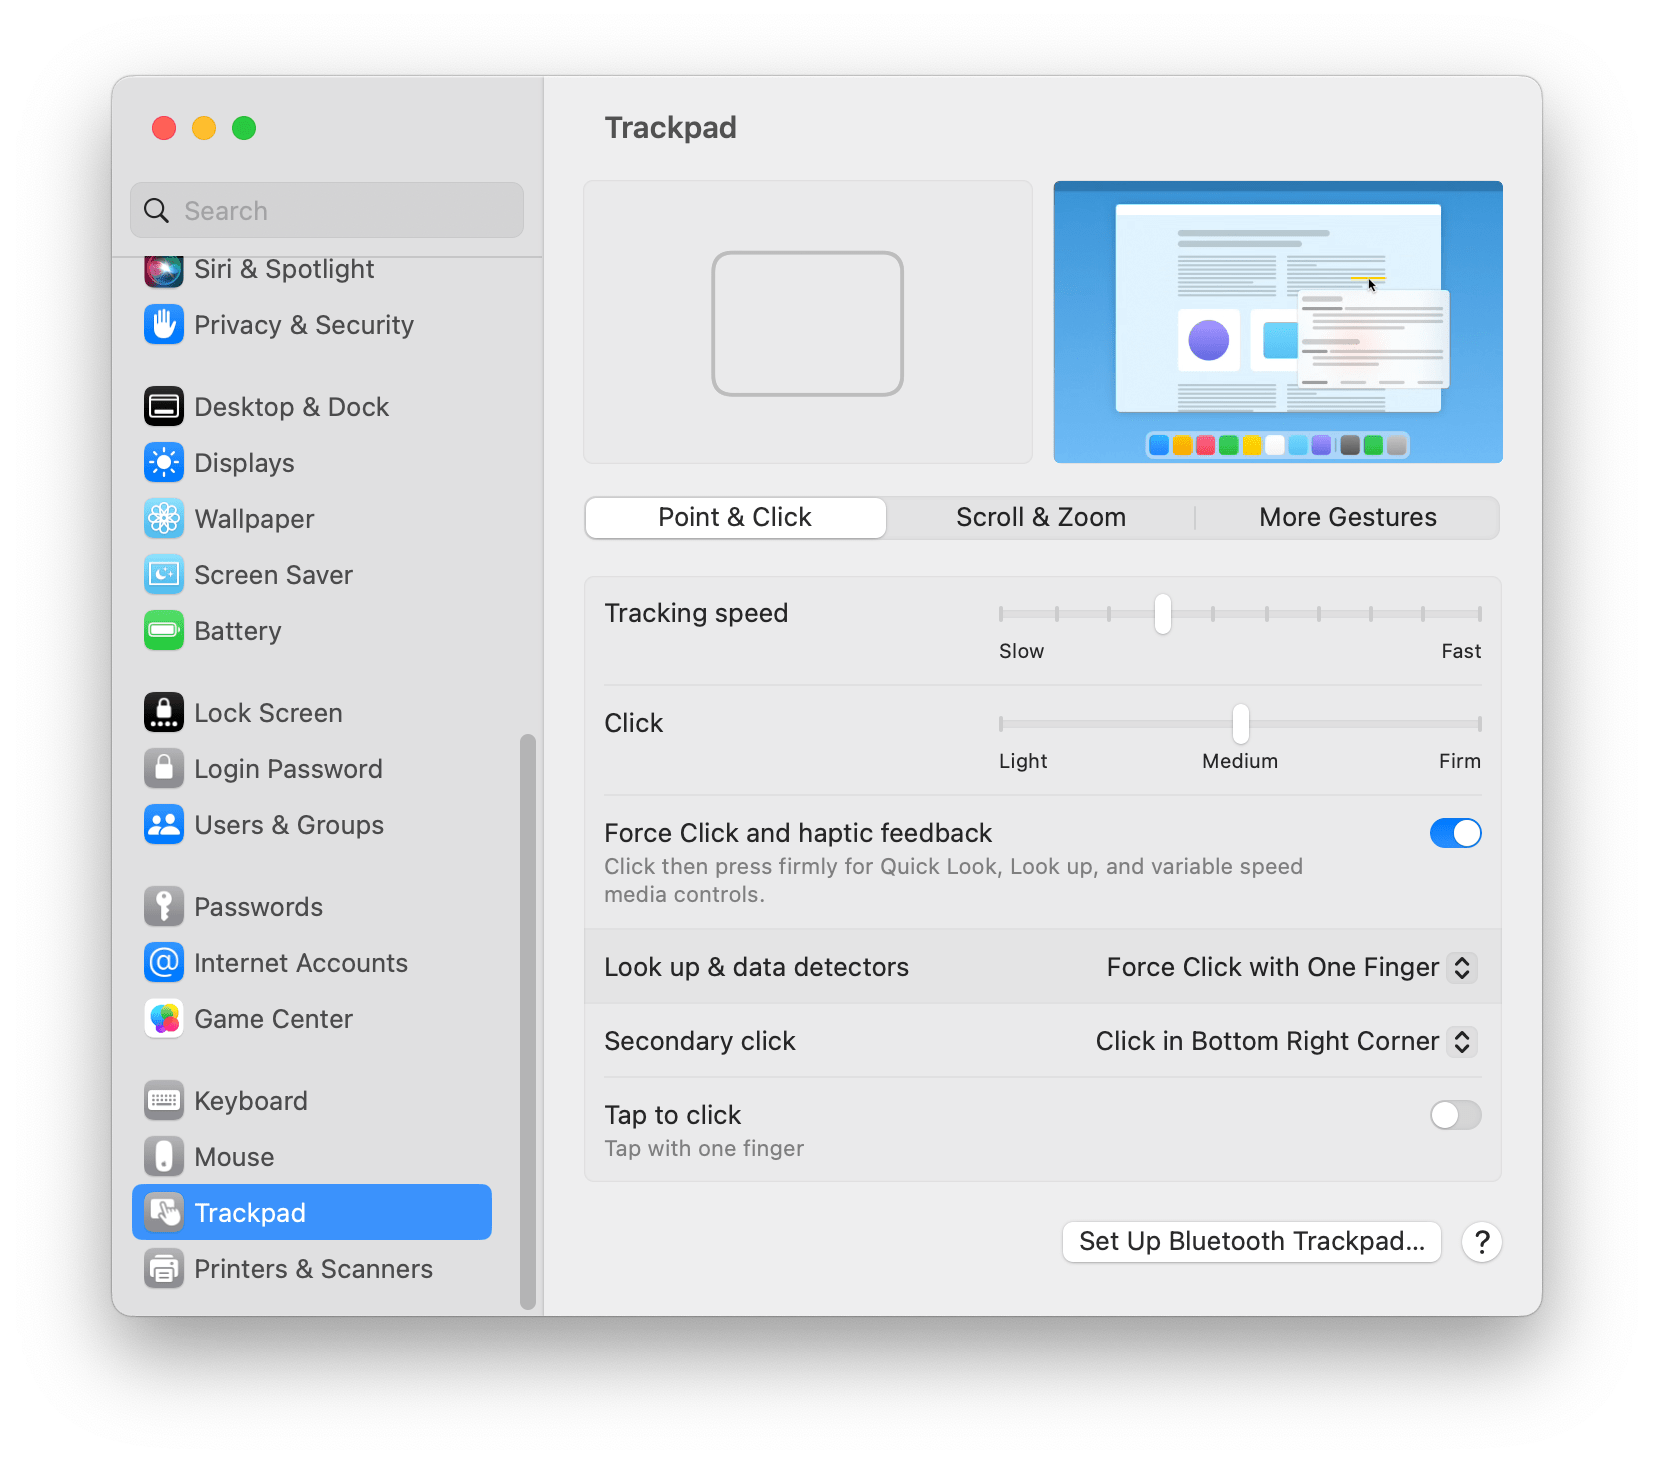 trackpad settings on Mac